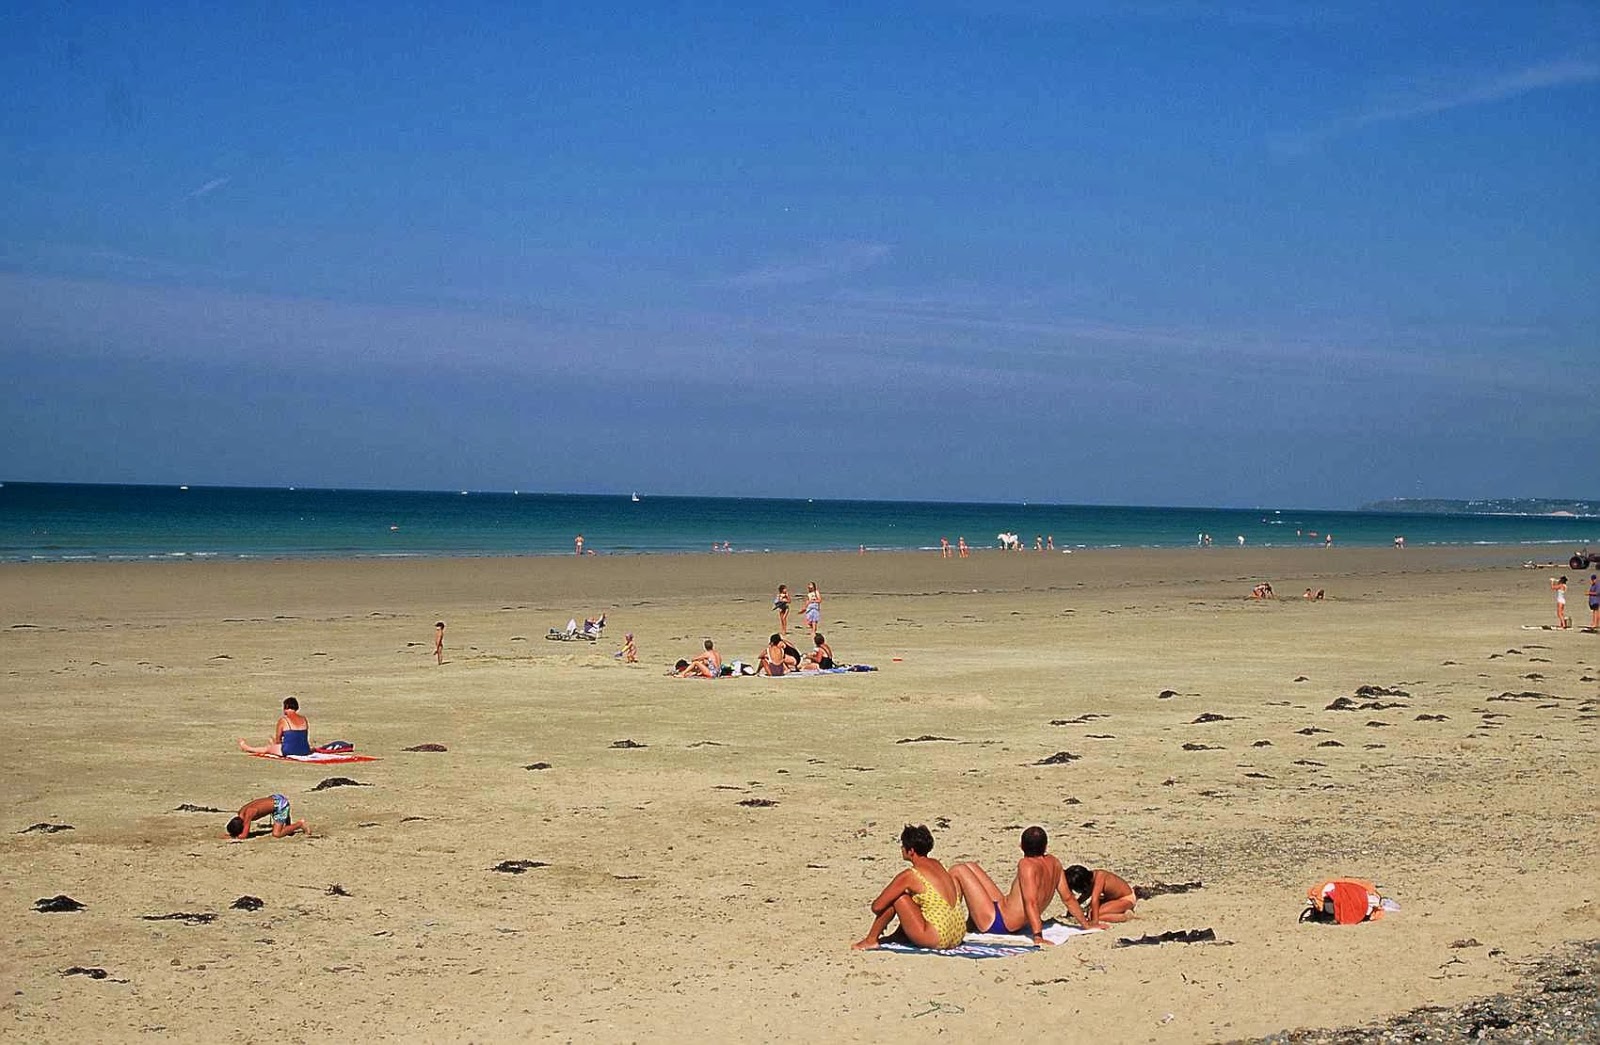 丹内维尔海滩的照片 具有非常干净级别的清洁度